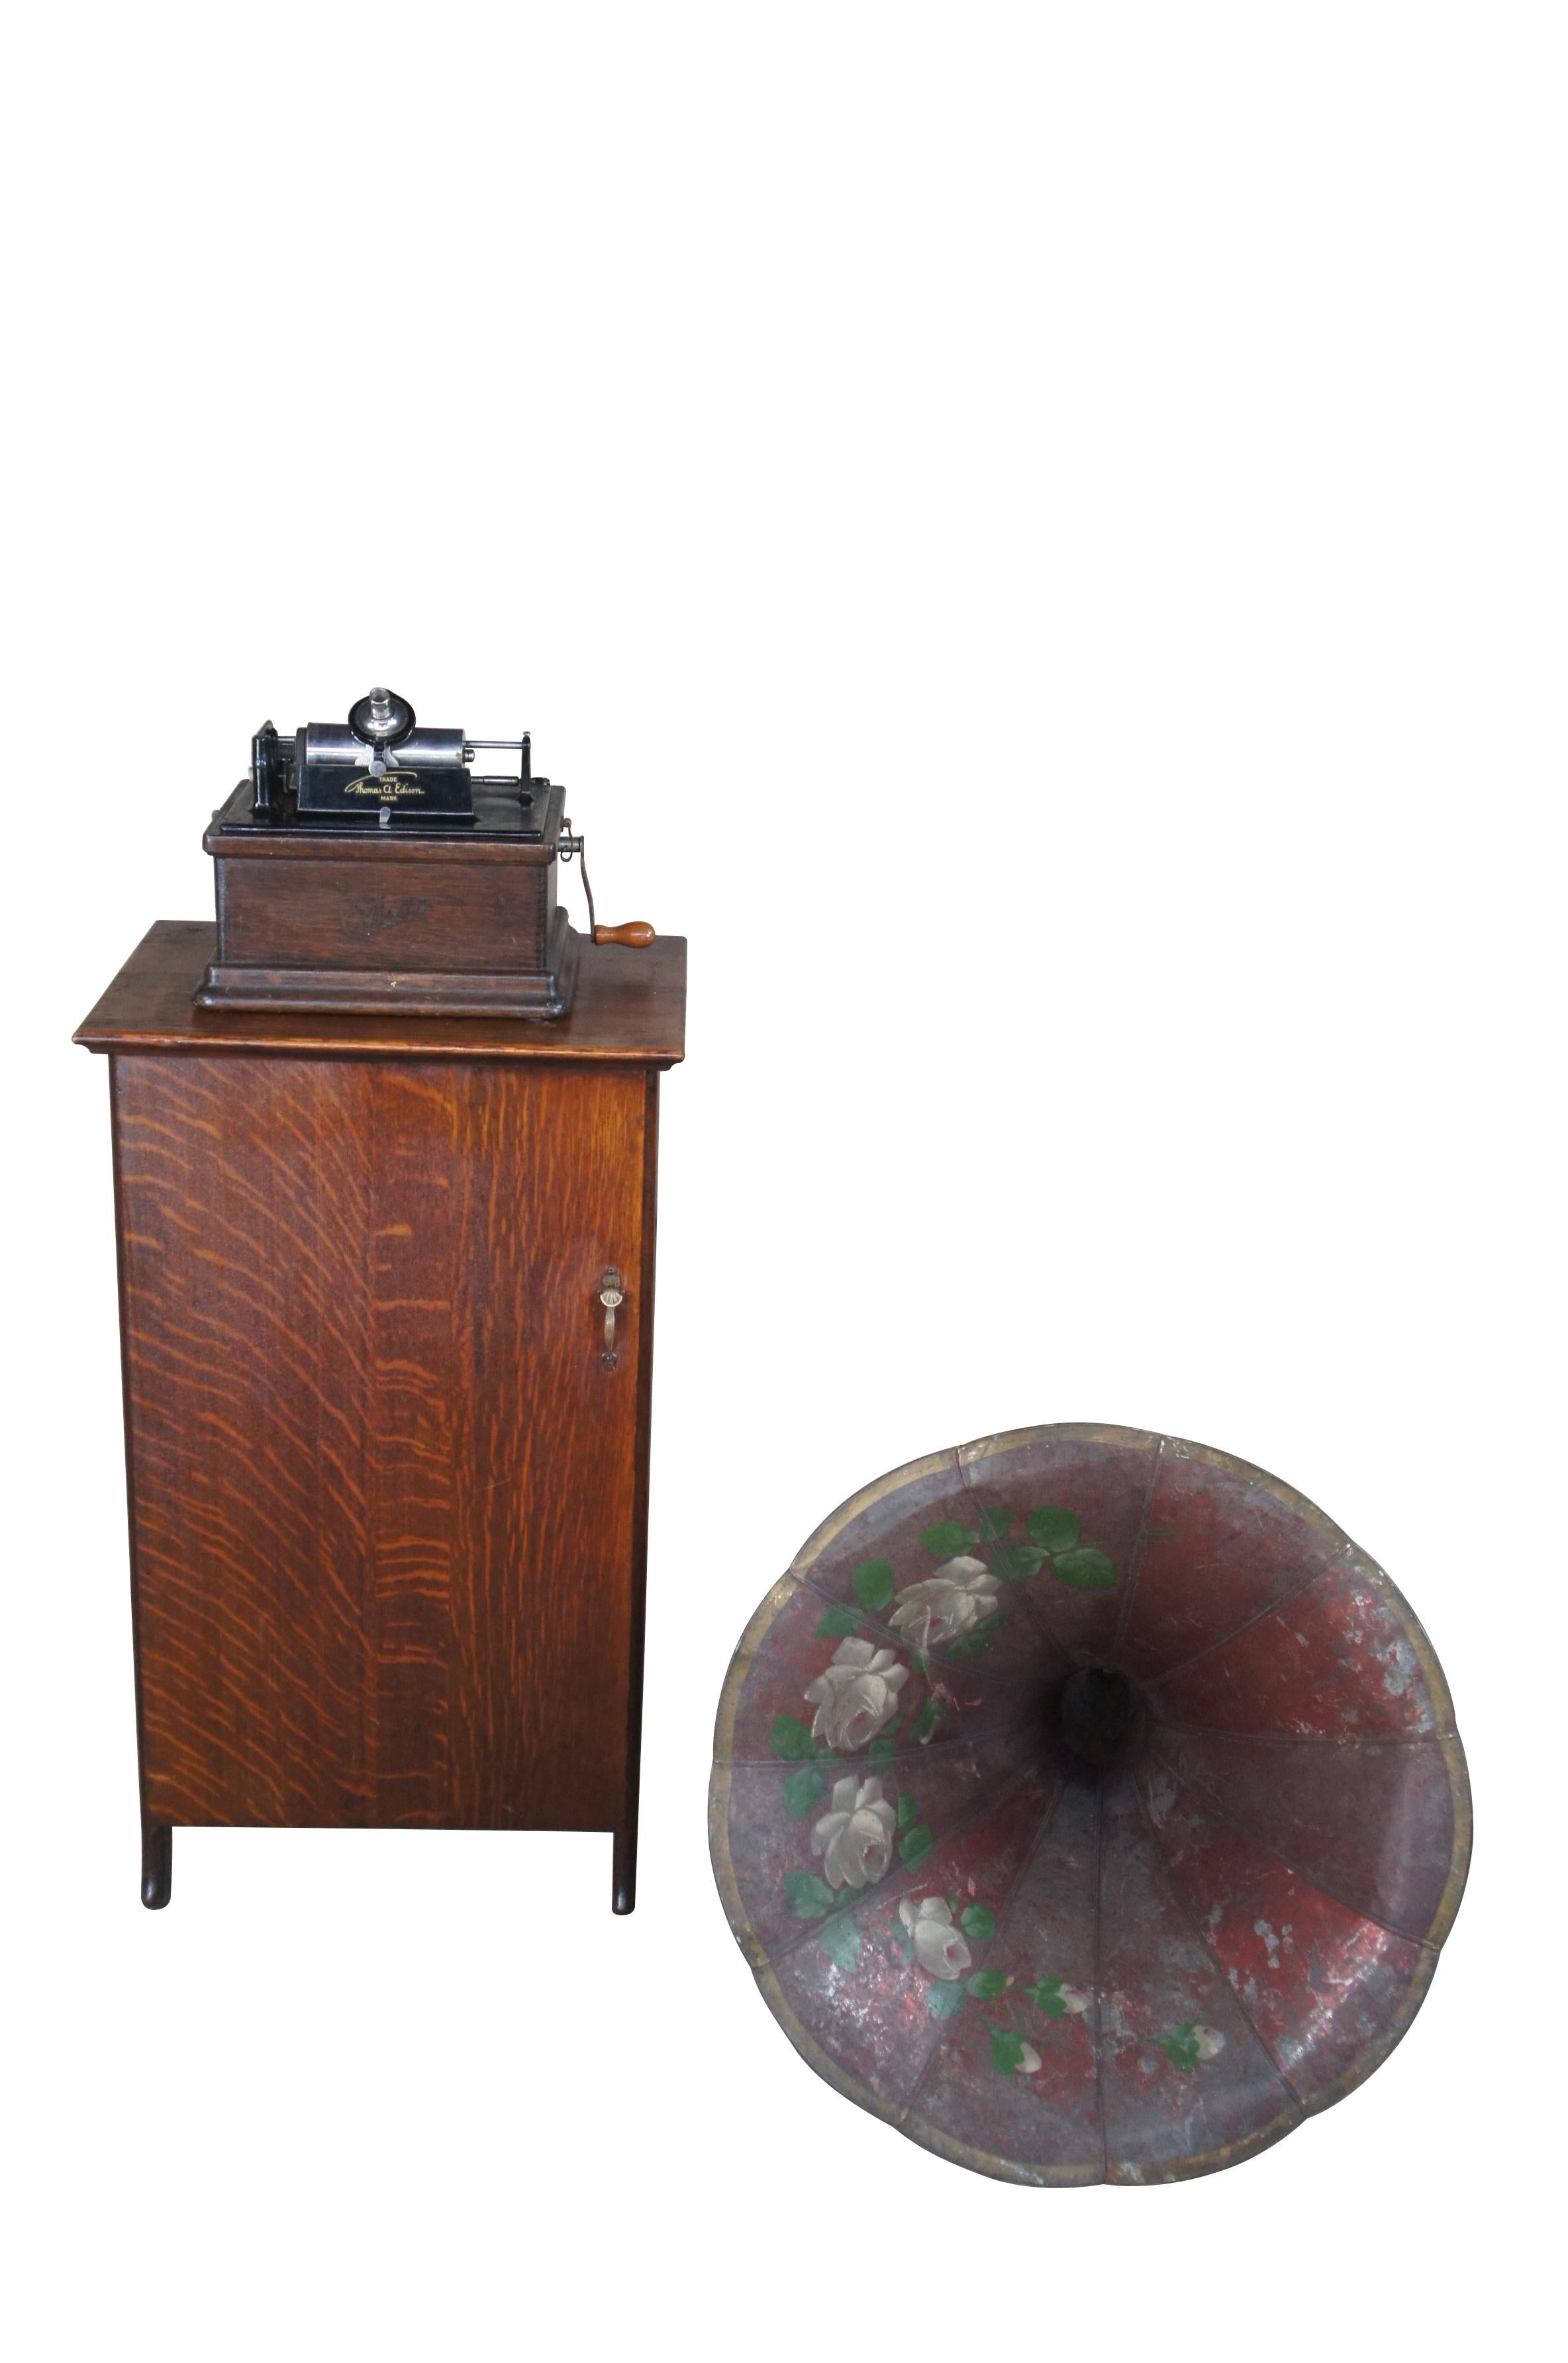 Ein außergewöhnlicher früher Thomas Edison Modell A Zylinder Phonograph mit originalem Horn, Röhrengehäuse und 93 Platten.  Der Phonographenkasten und das Gehäuse sind aus Eichenholz in spätviktorianischer Manier gefertigt, mit einigen